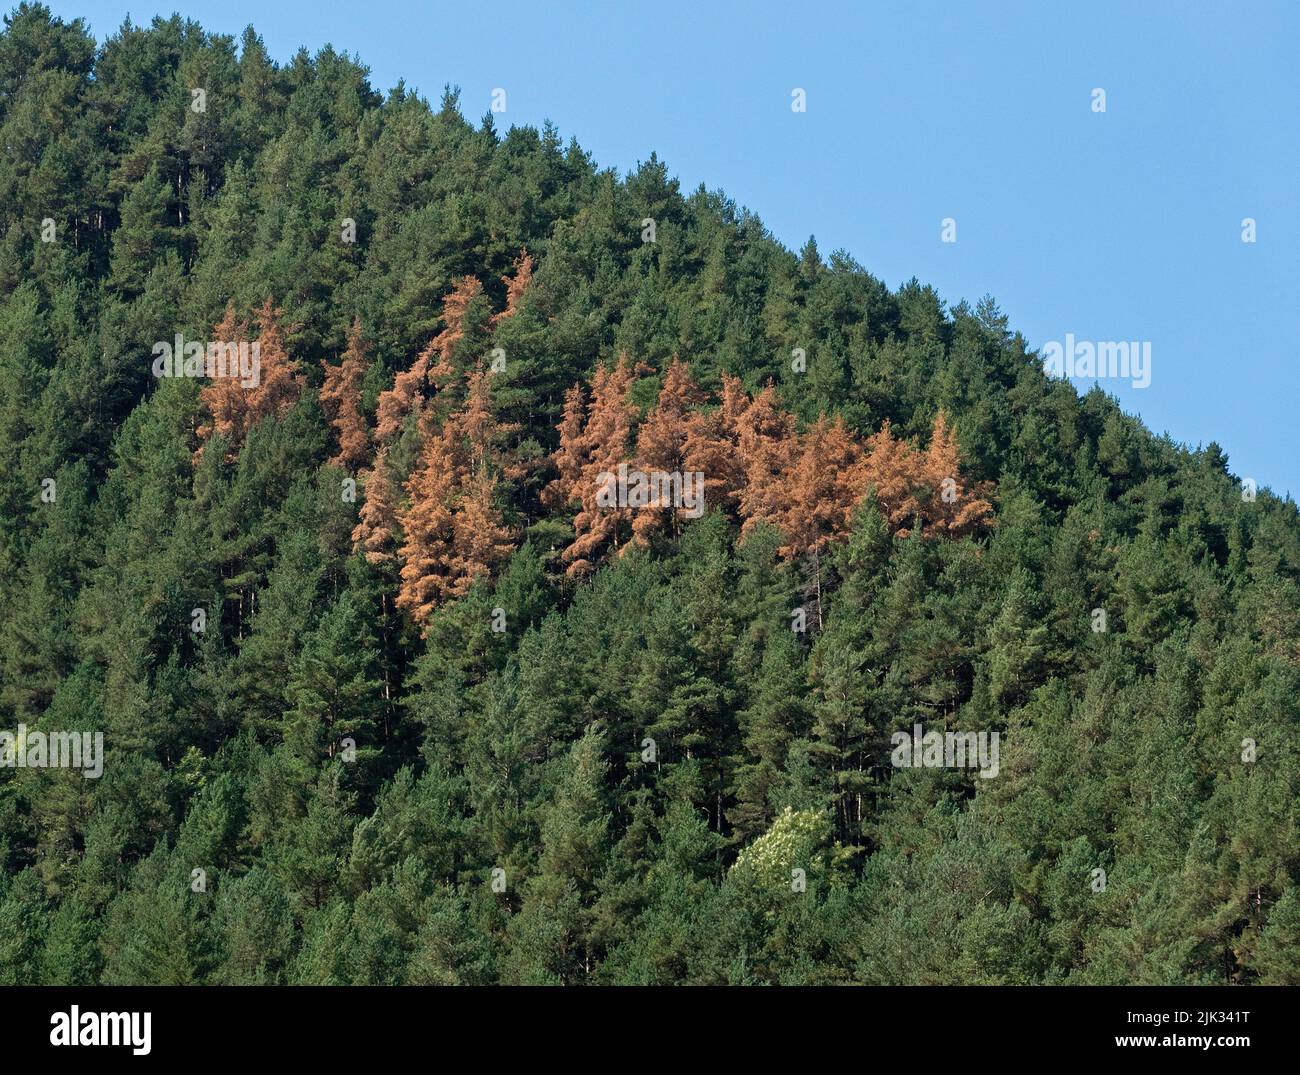 Bosque moribundo, enfermedad de los árboles, coníferas marrones en el bosque verde en la ladera de la montaña Foto de stock